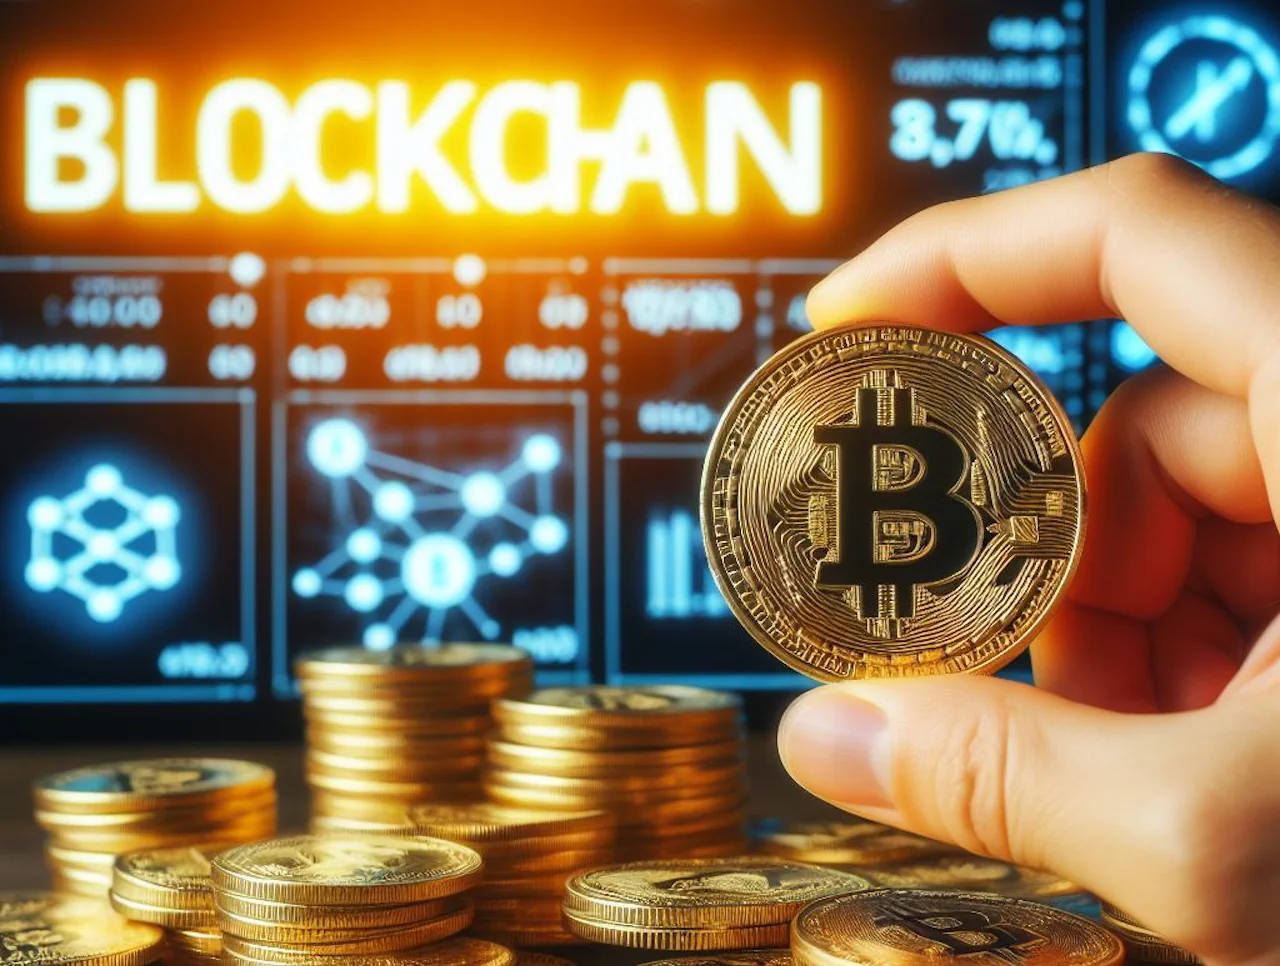 Imagem simbolizando o que é uma blockchain justamente com uma moeda bitcoin